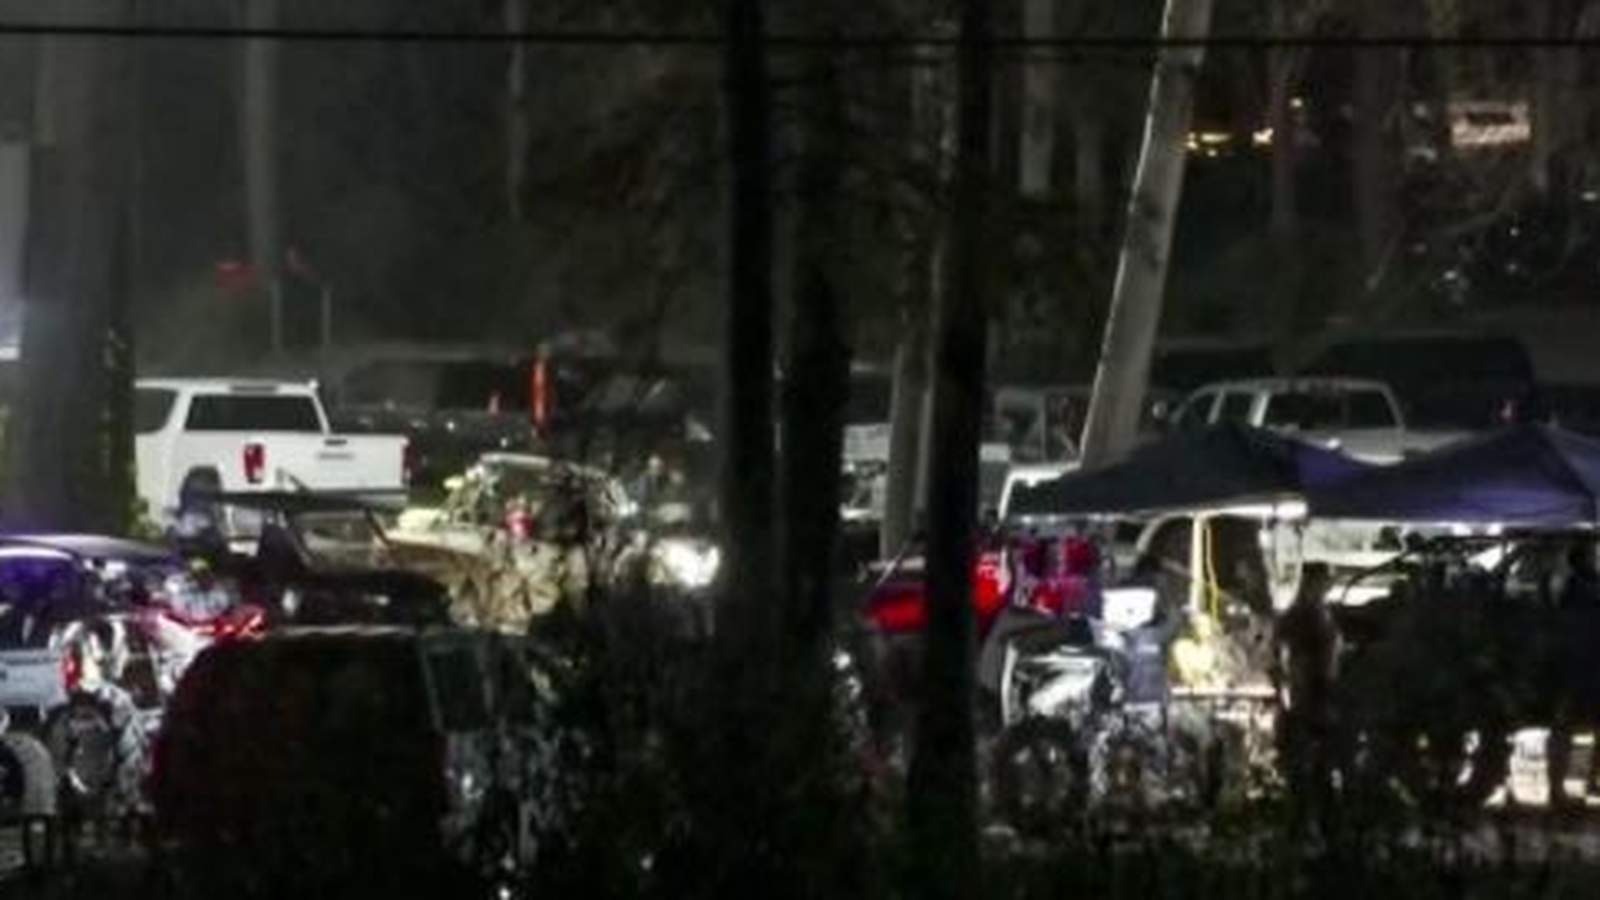 1 person dead in ATV crash in Crosby, deputies say